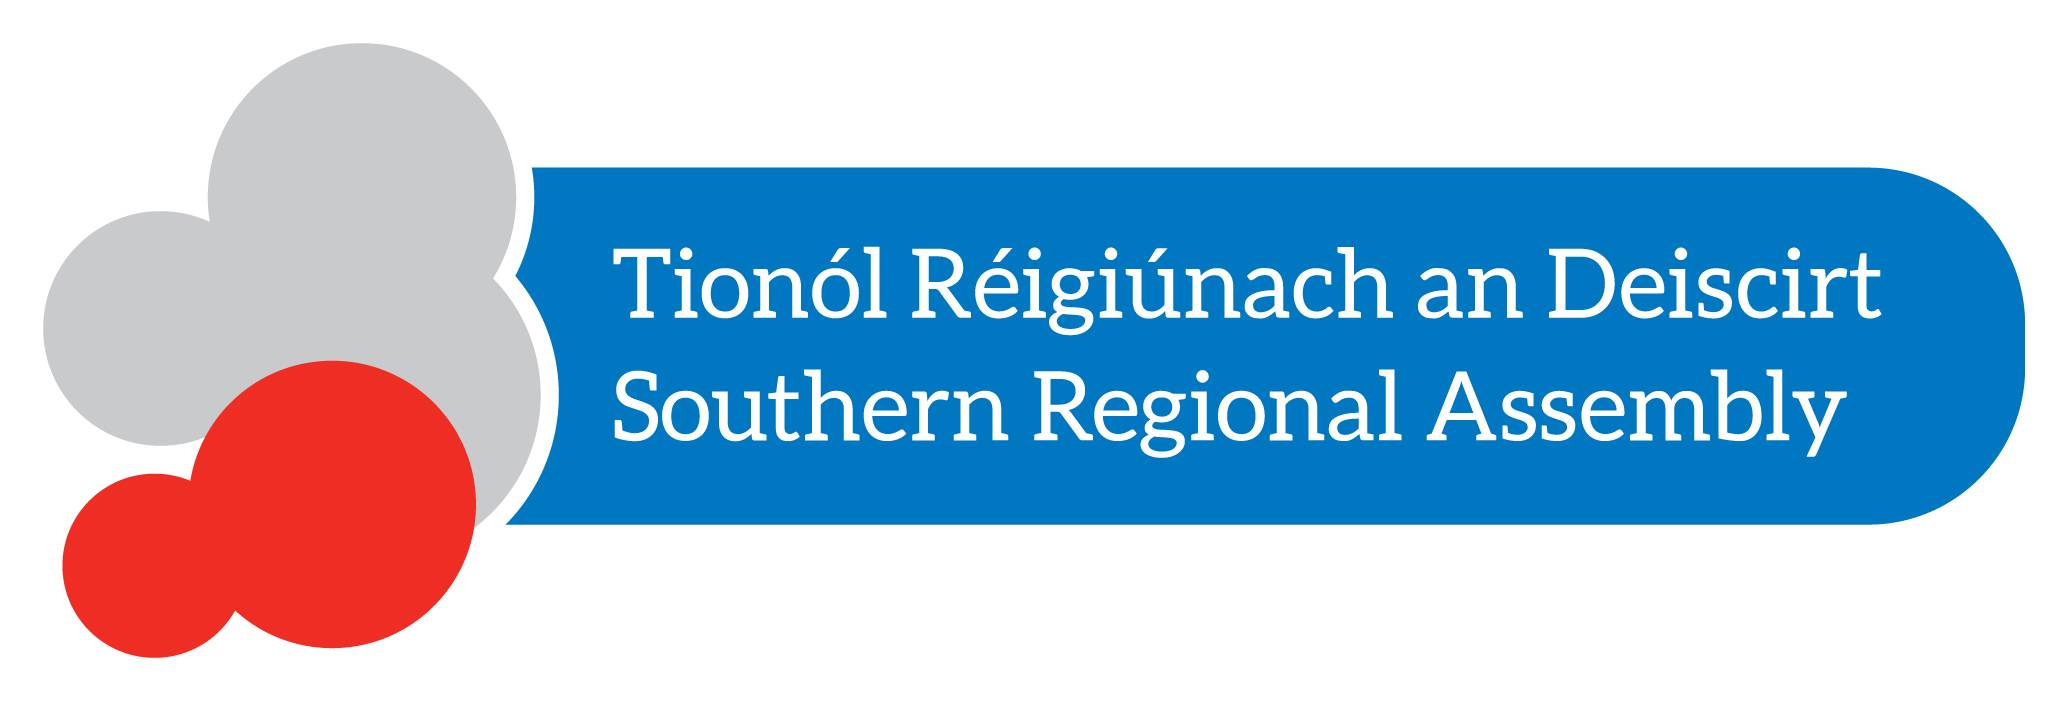 Regionalversammlung Süd